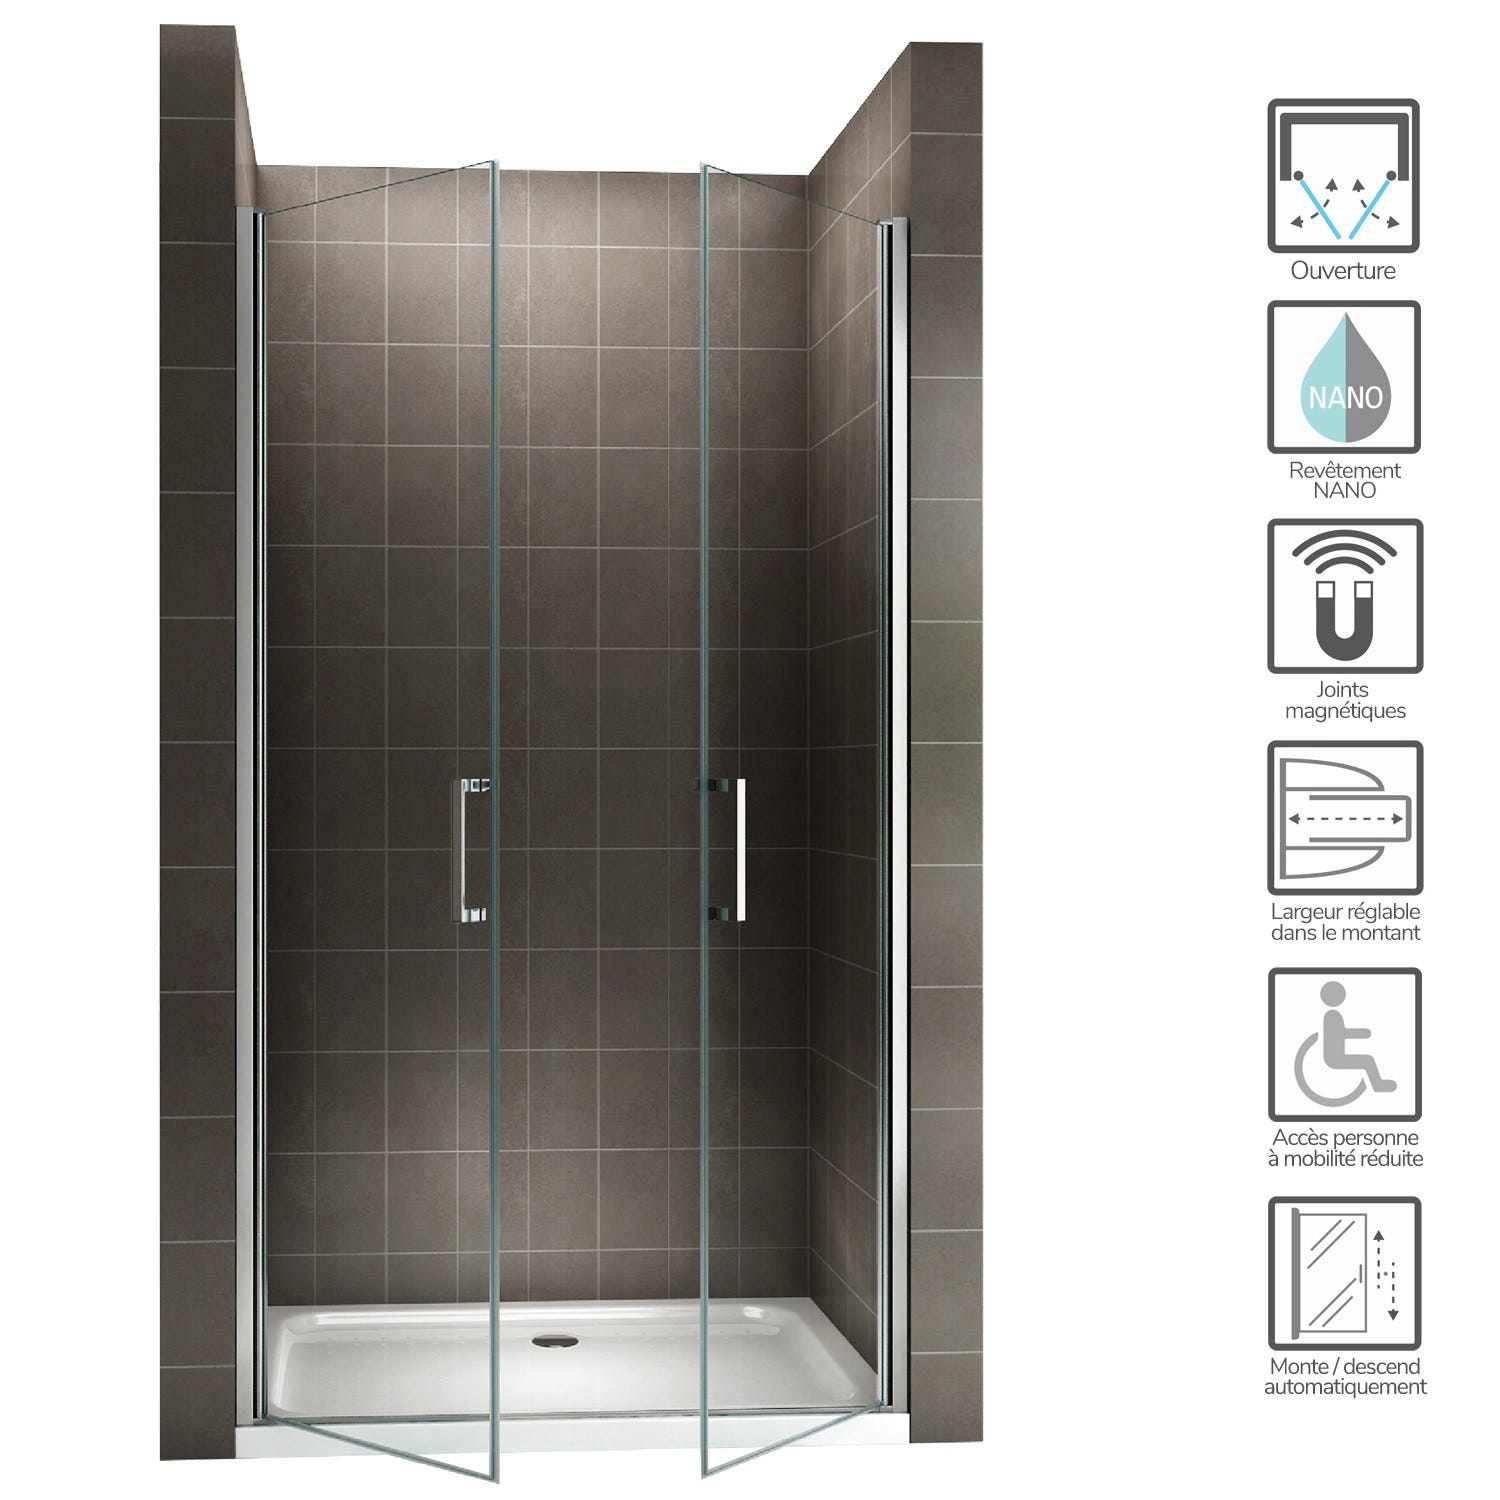 KAYA Porte de douche H 180 largeur réglable 86 à 89 cm verre transparent 1